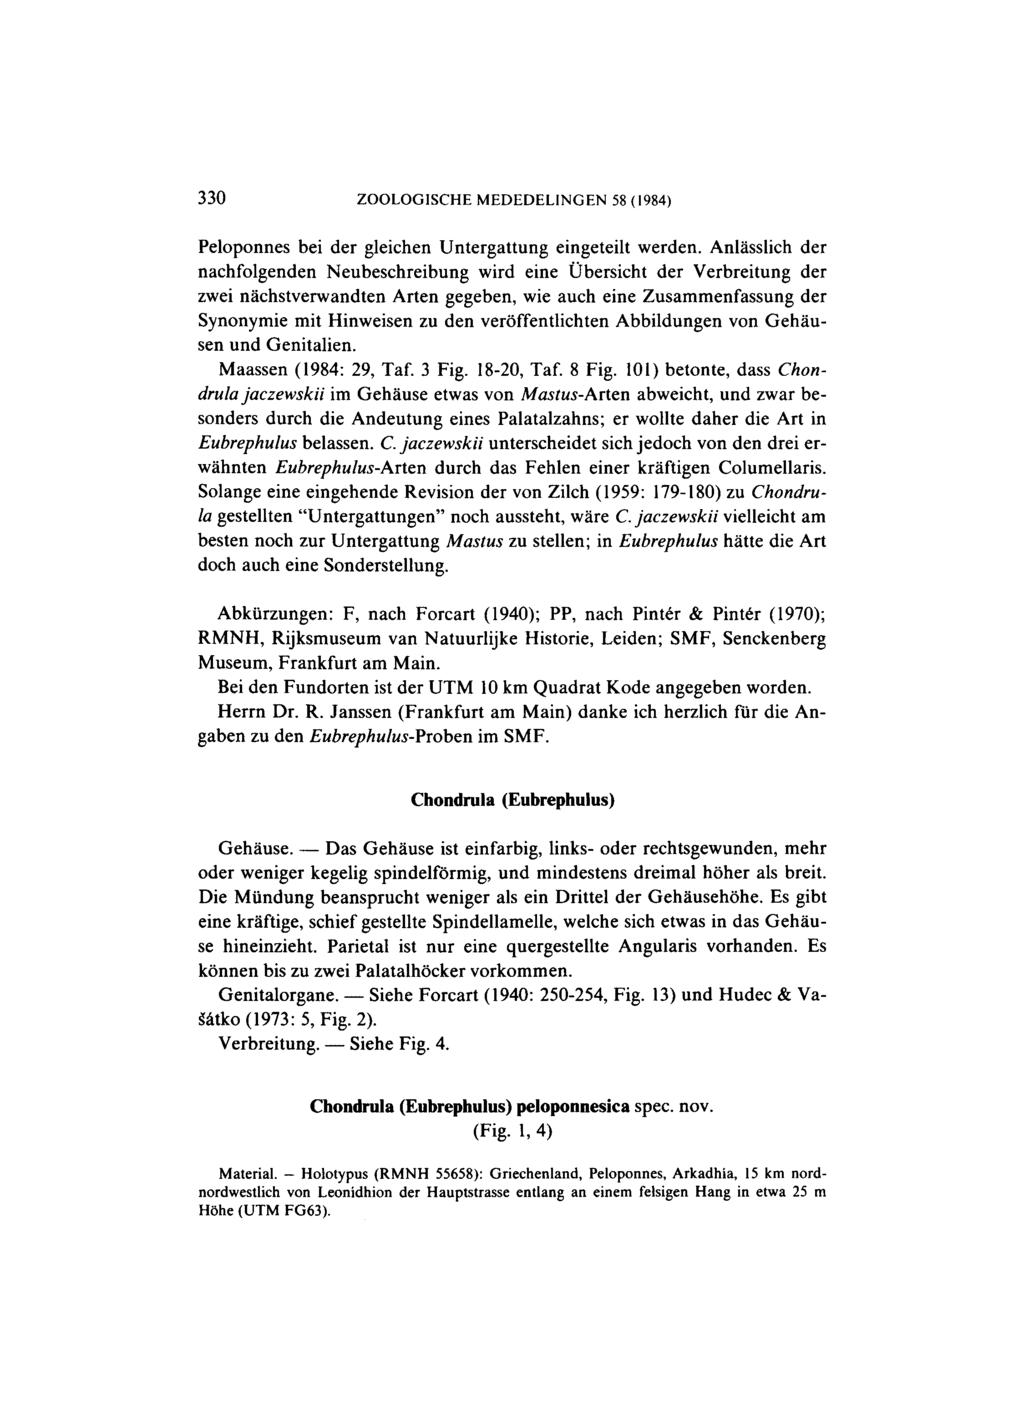 330 ZOOLOGISCHE MEDEDELINGEN 58 (1984) Peloponnes bei der gleichen Untergattung eingeteilt werden.